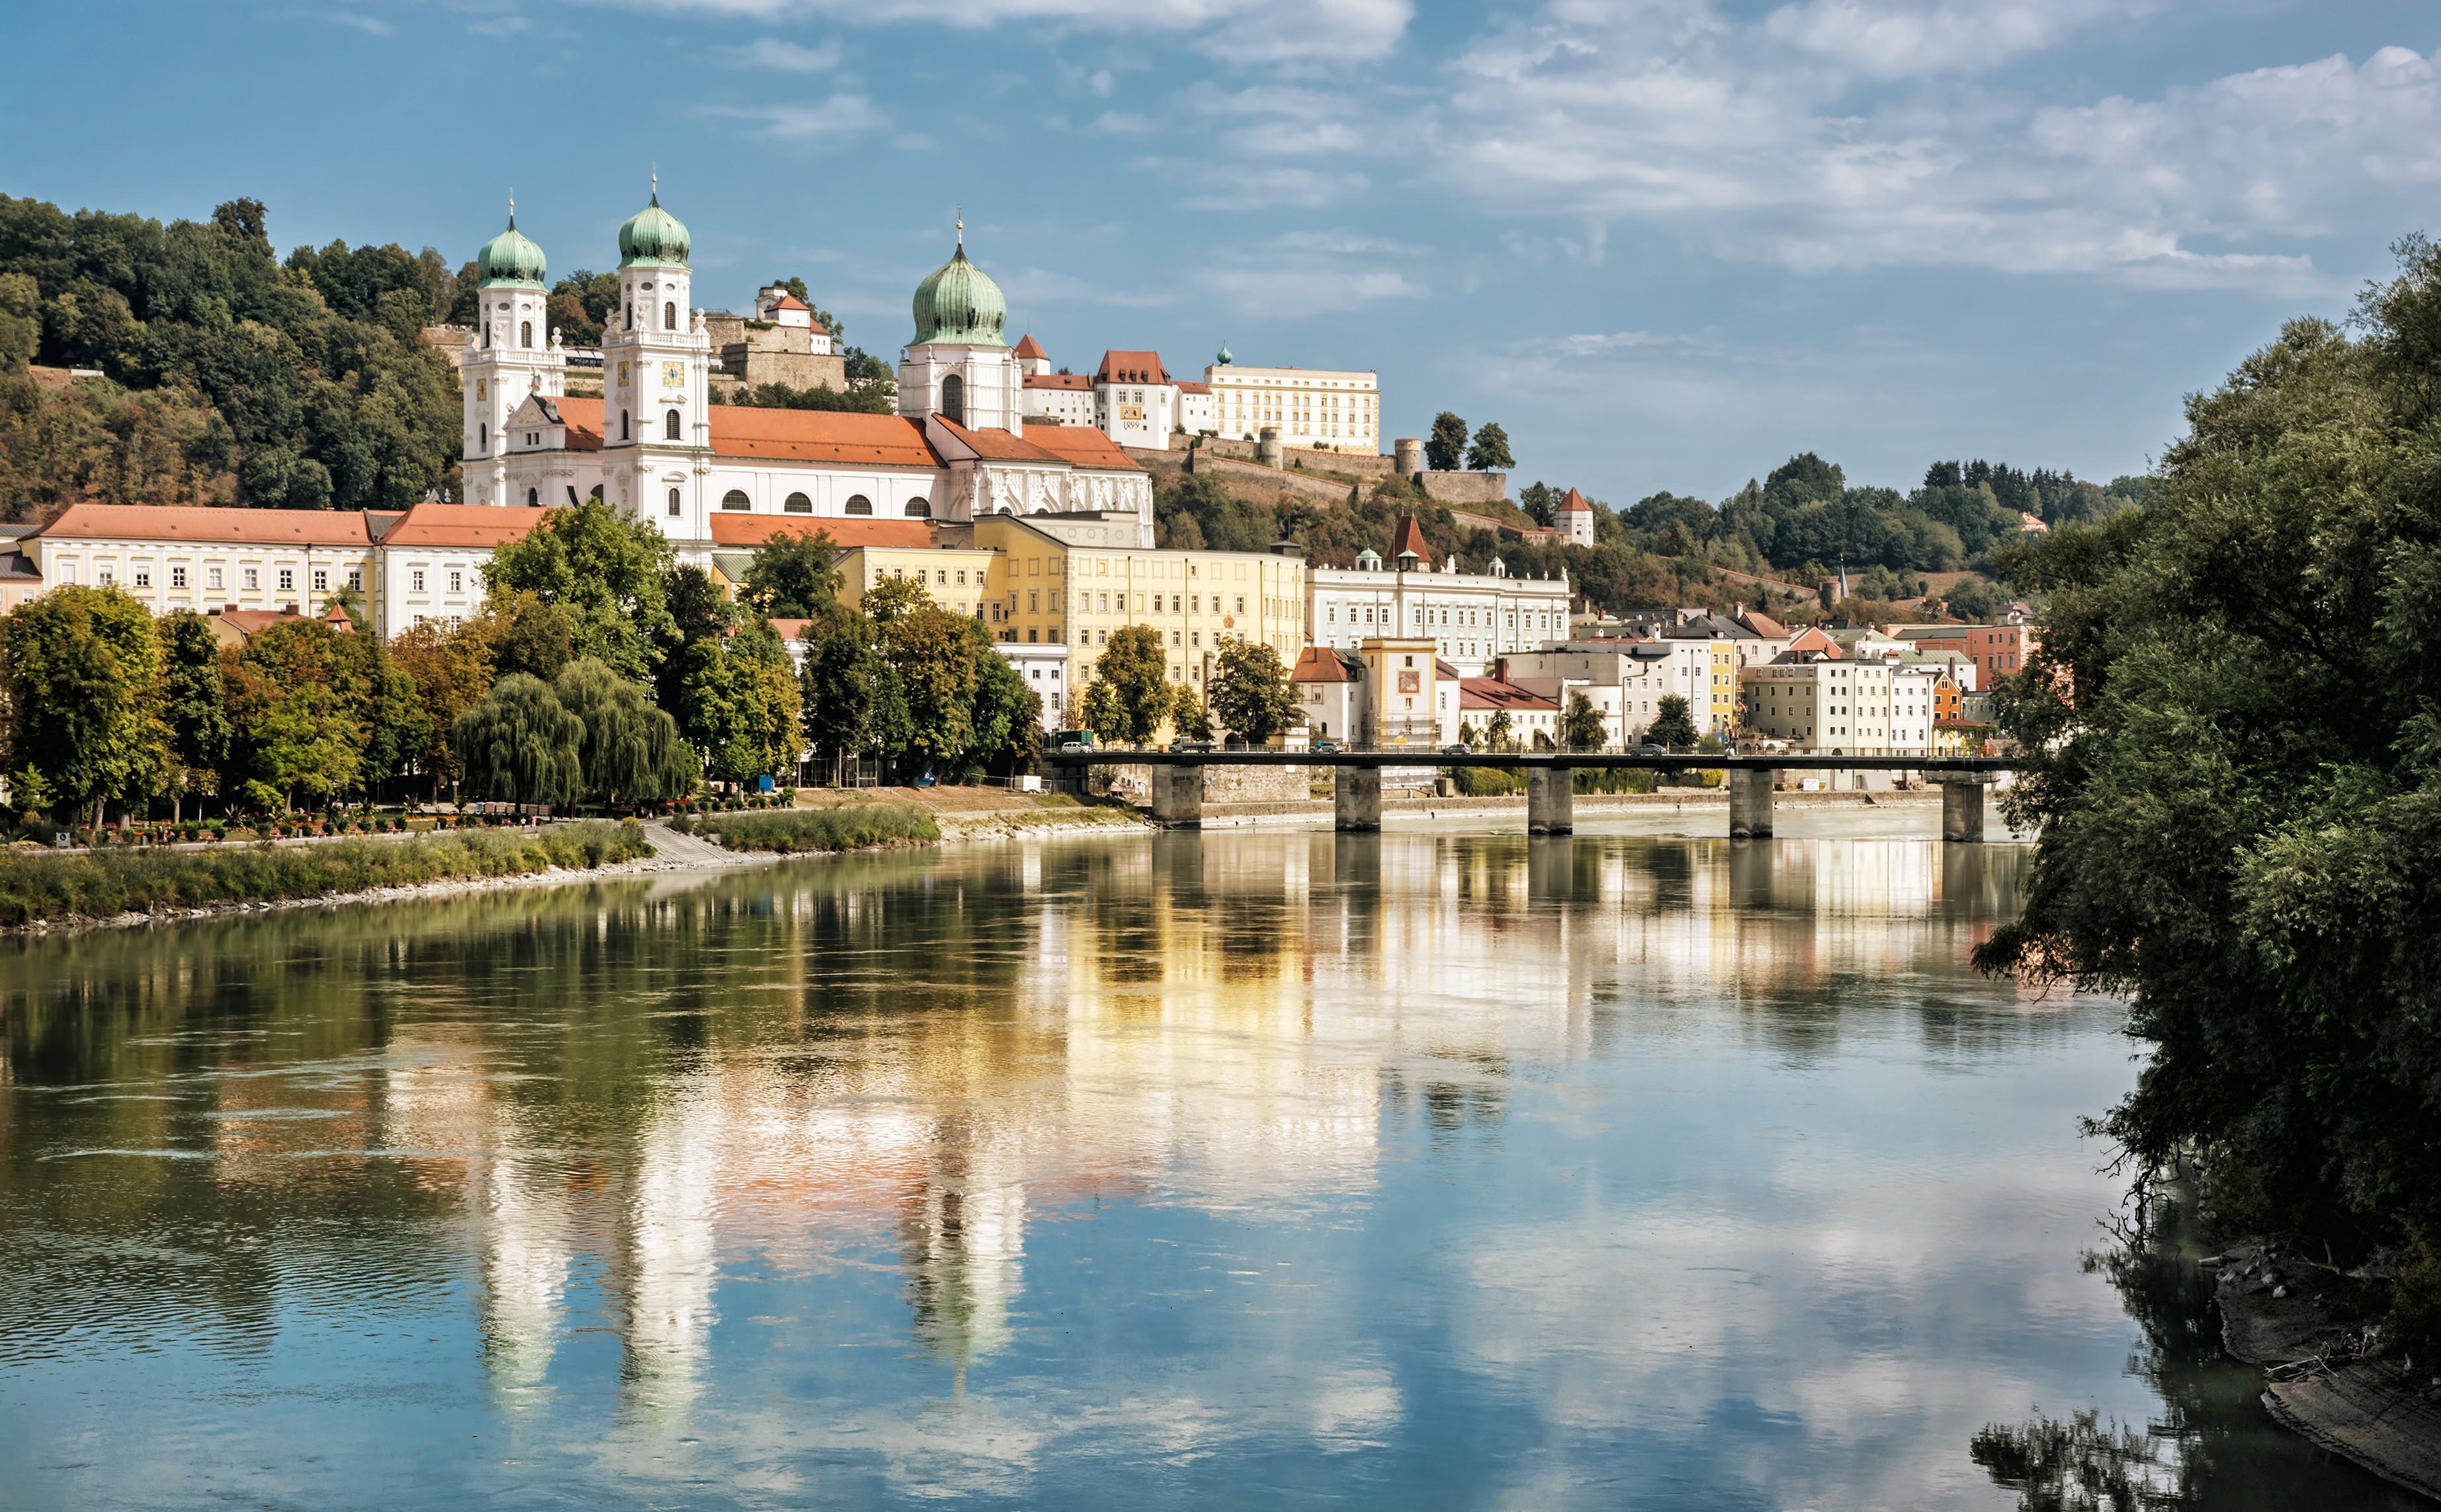 Ausblick auf die Stadt Passau und ihre Umgebung.